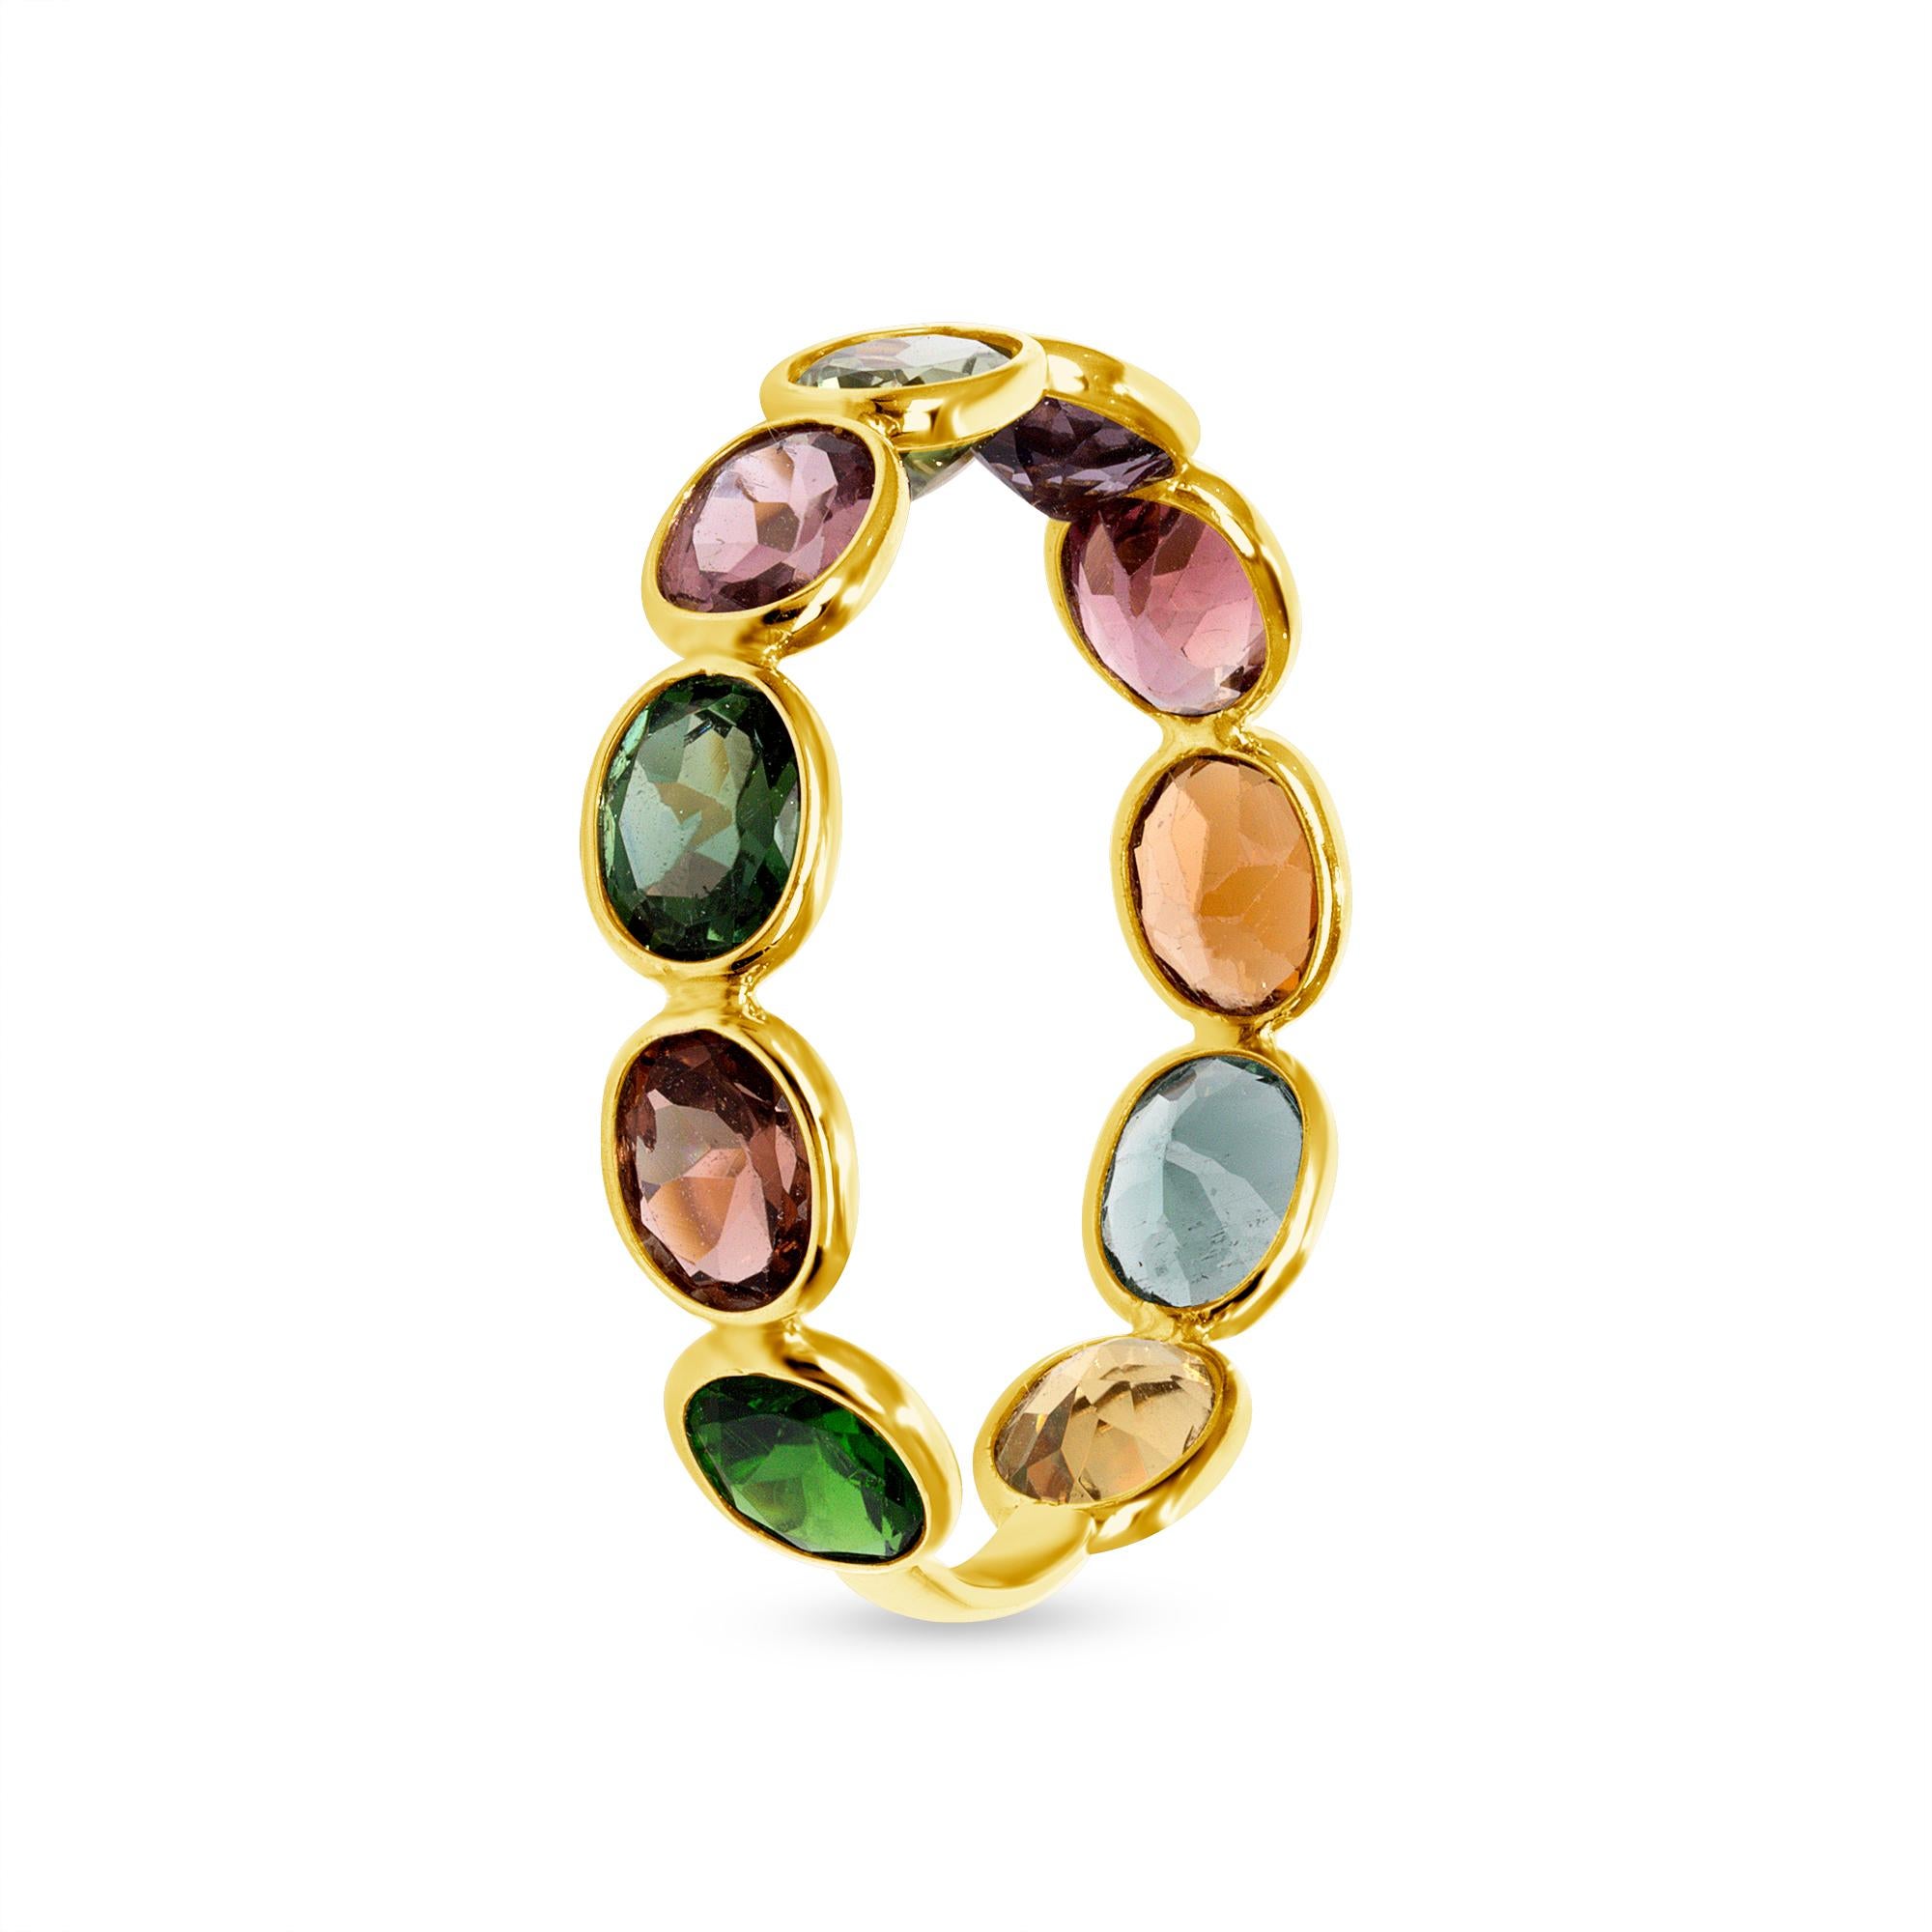 Dieser von der preisgekrönten Künstlerin Brenda Smith entworfene Ring besteht aus facettierten natürlichen mehrfarbigen Saphiren mit einem Gesamtgewicht von 3,56 Karat und 18 Karat Gelbgold. Er ist auf Lager und in den Größen 5 bis 7 erhältlich.